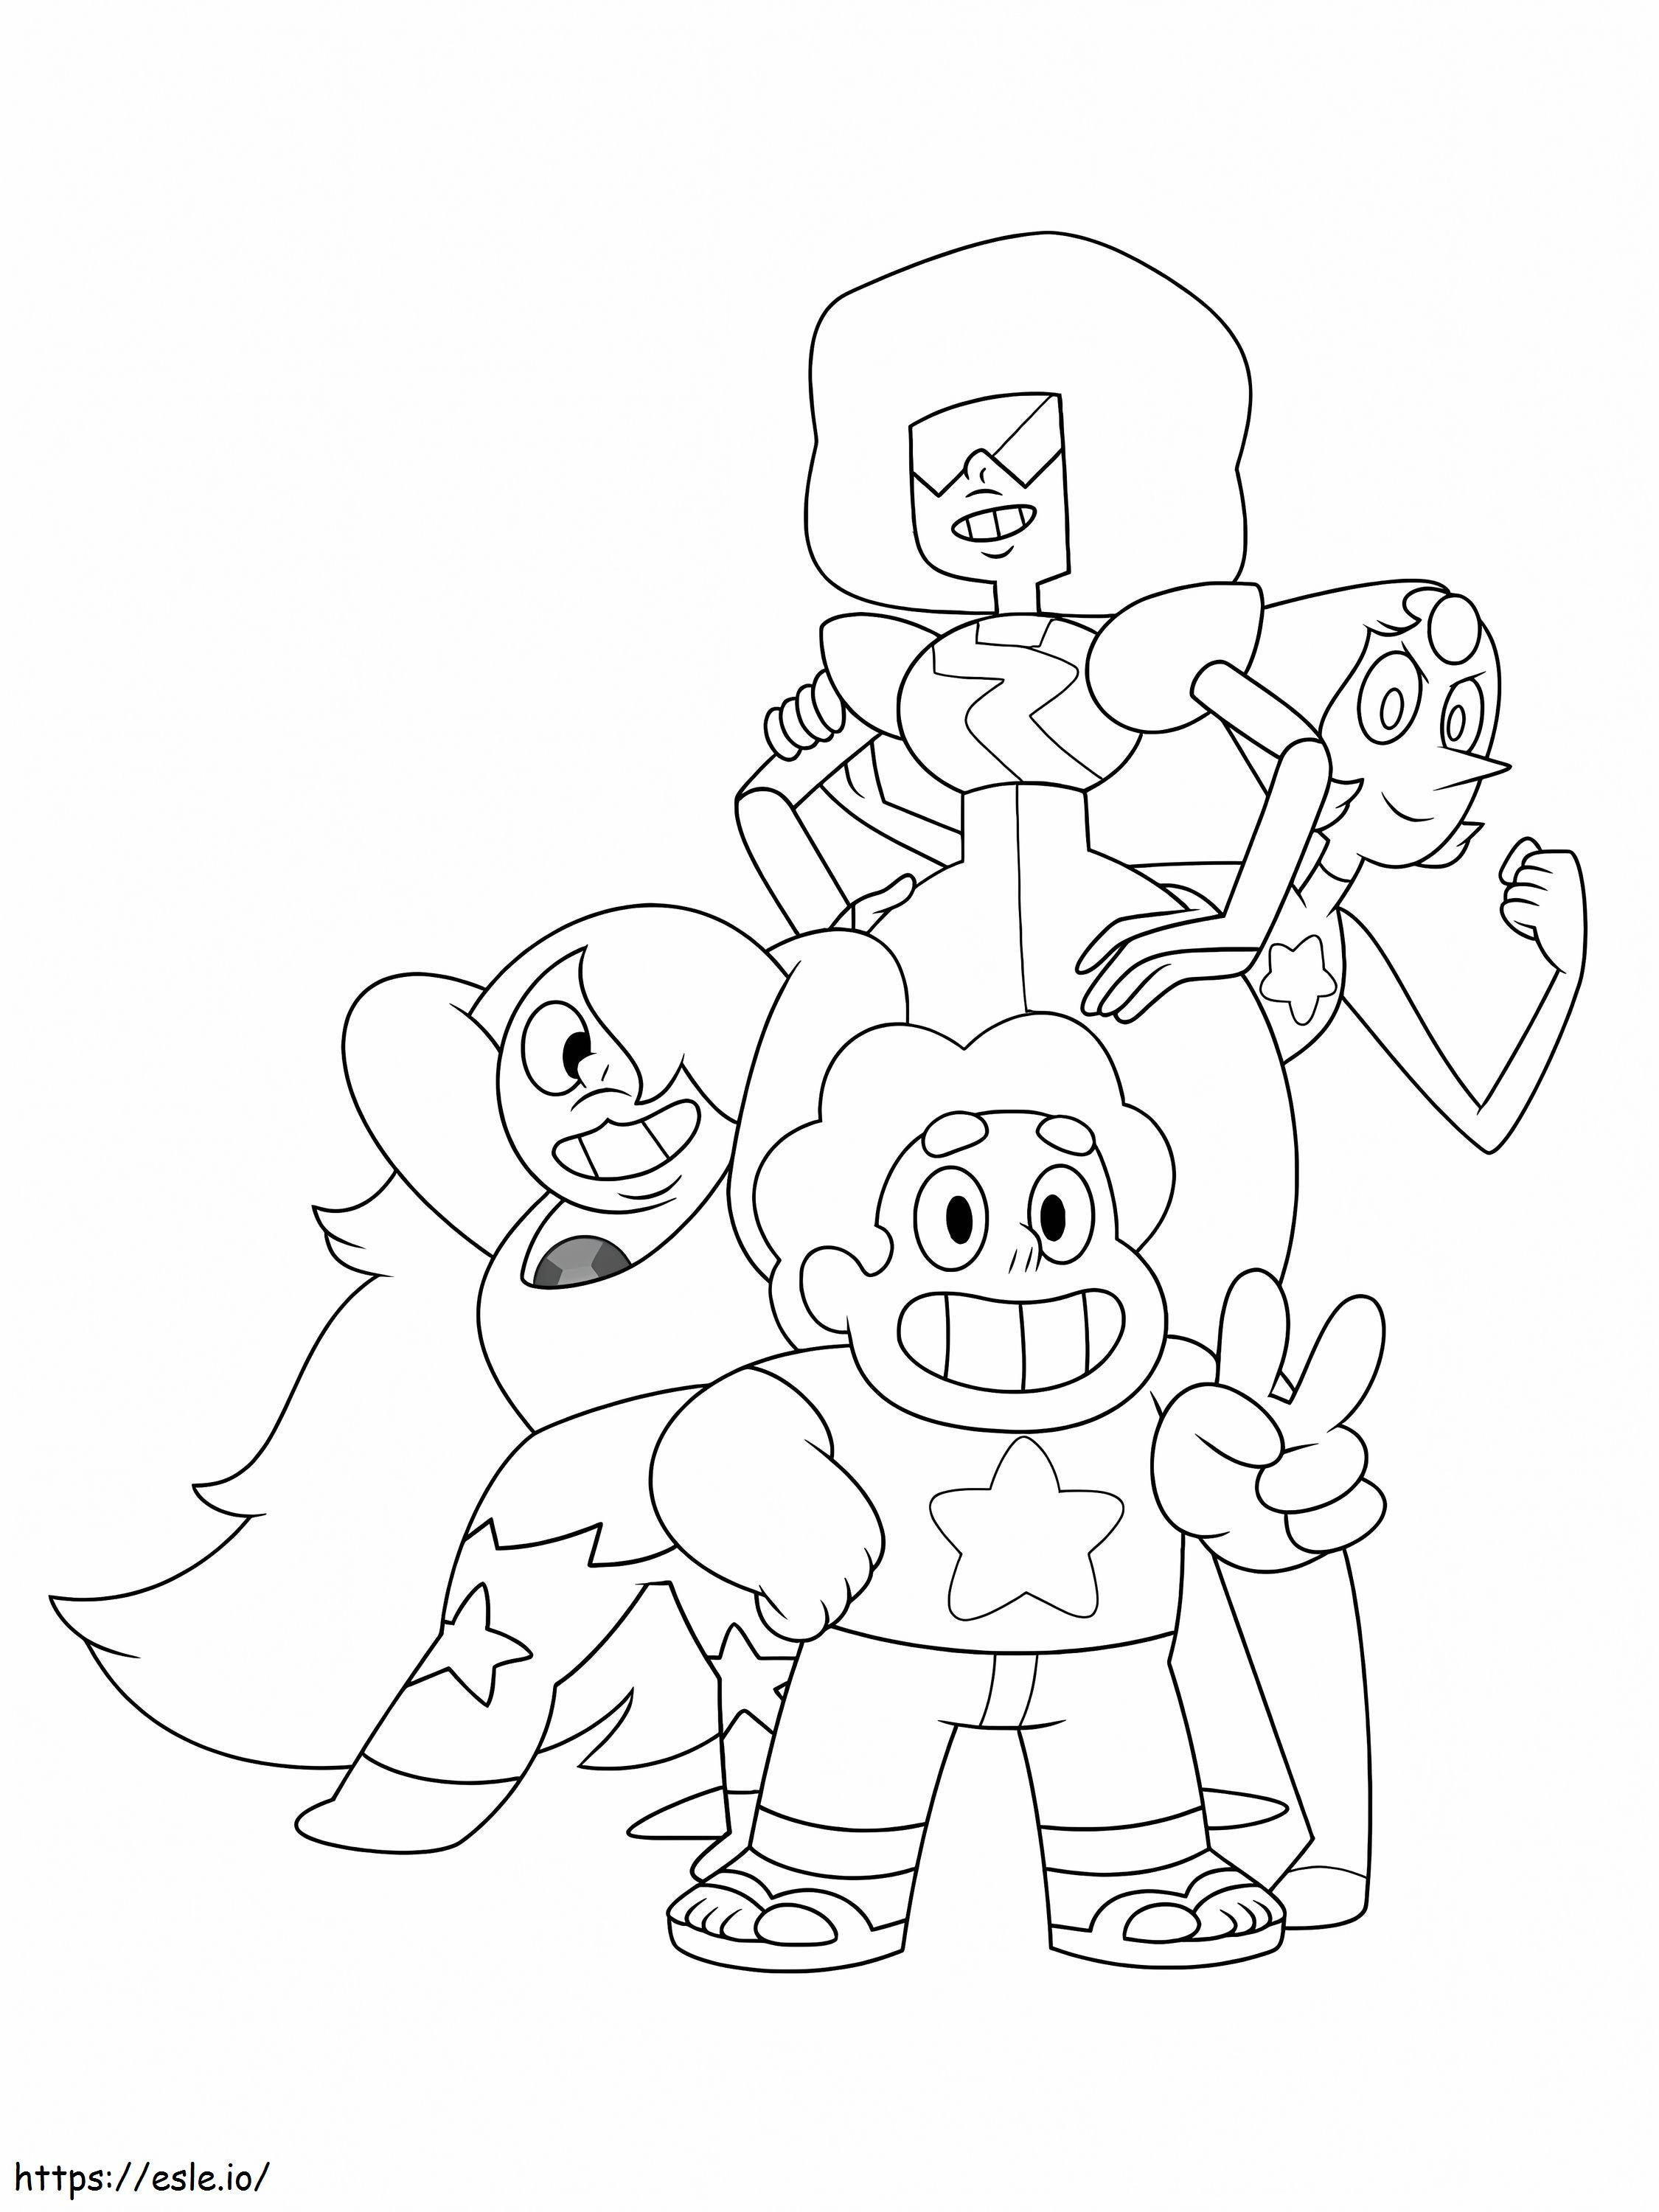 Steven e i suoi amici di base da colorare